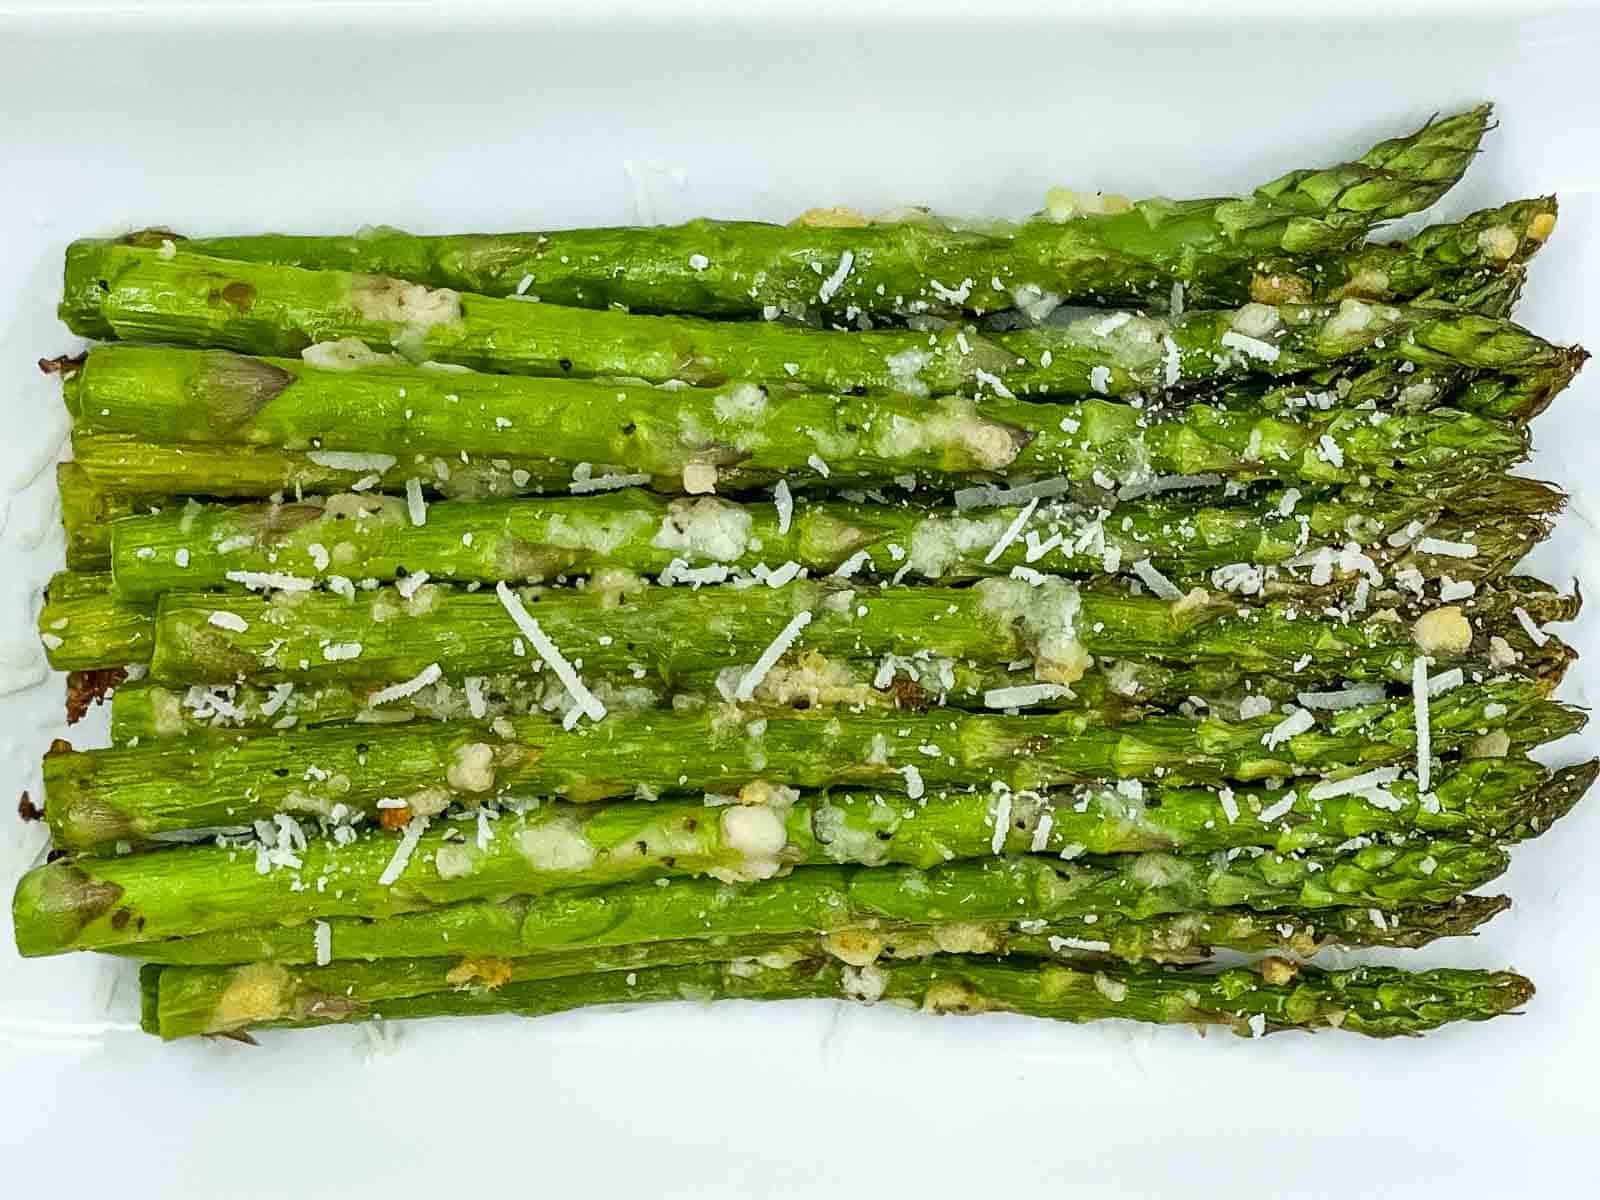 Air fryer asparagus.